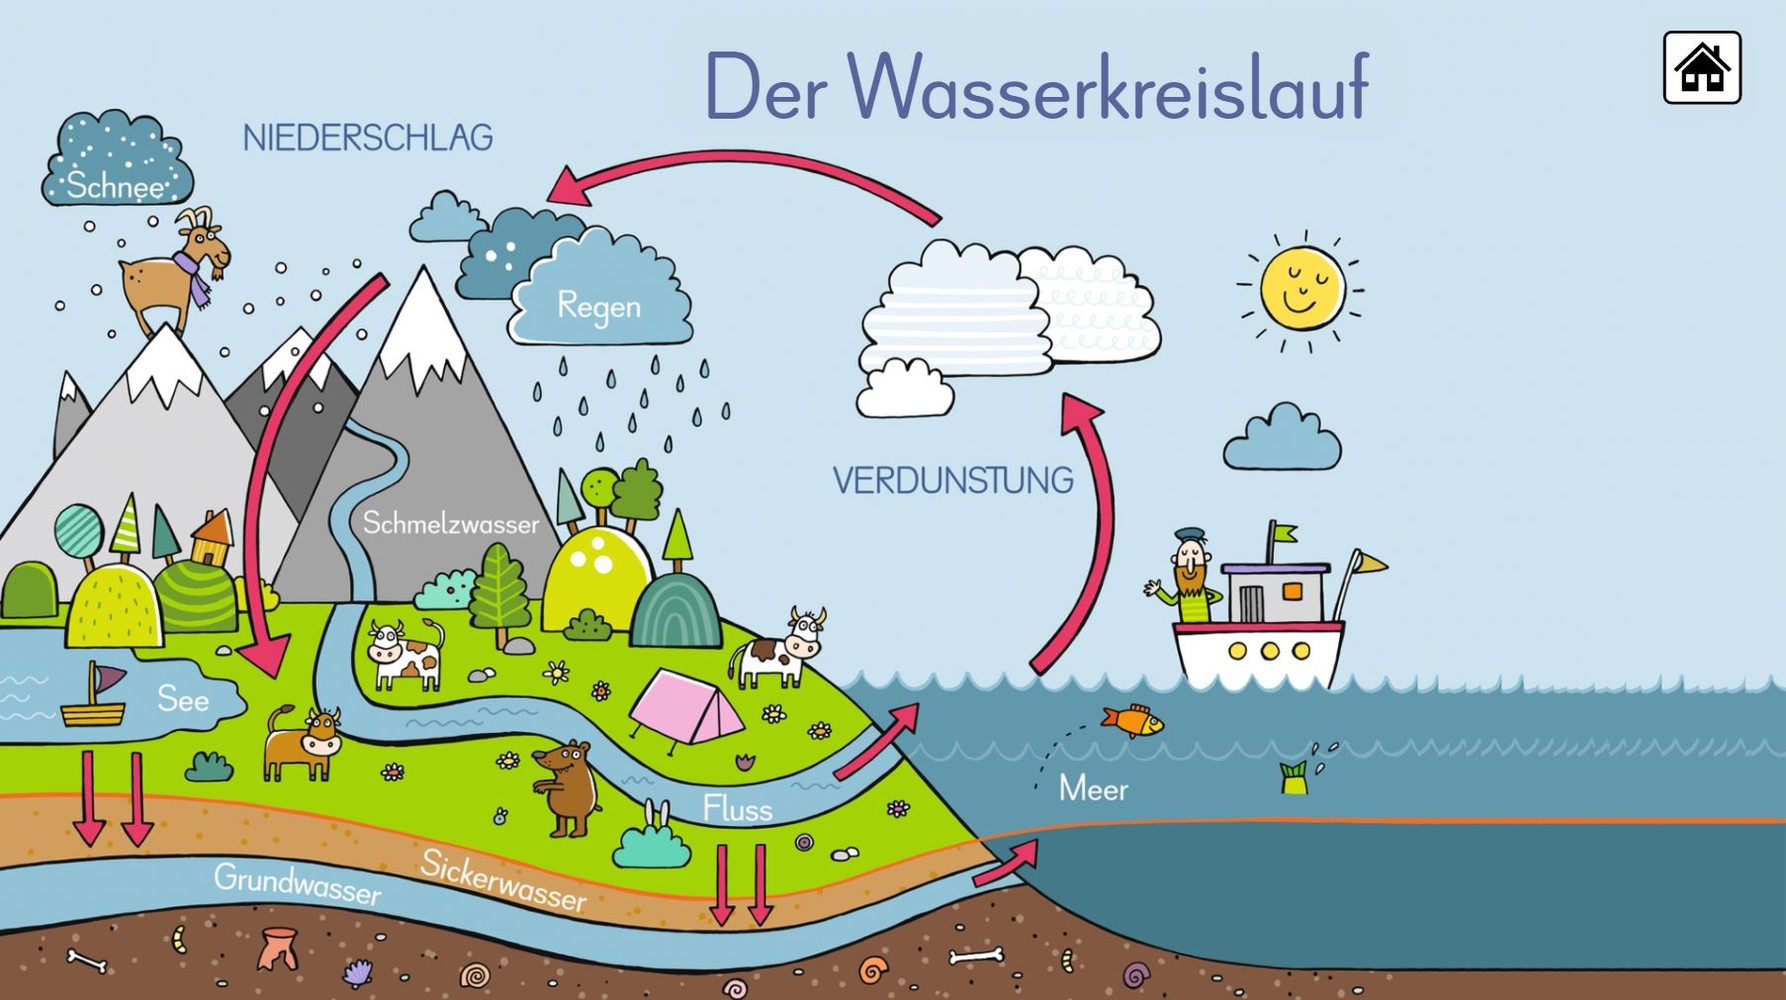 6 digitale Merk-Bilder für den Sachunterricht: Die Ernährungspyramide, Europa, Deutschland, Der Wasserkreislauf, Unsere Bäume, Unser Sonnensystem - Pro-Lizenz - Online